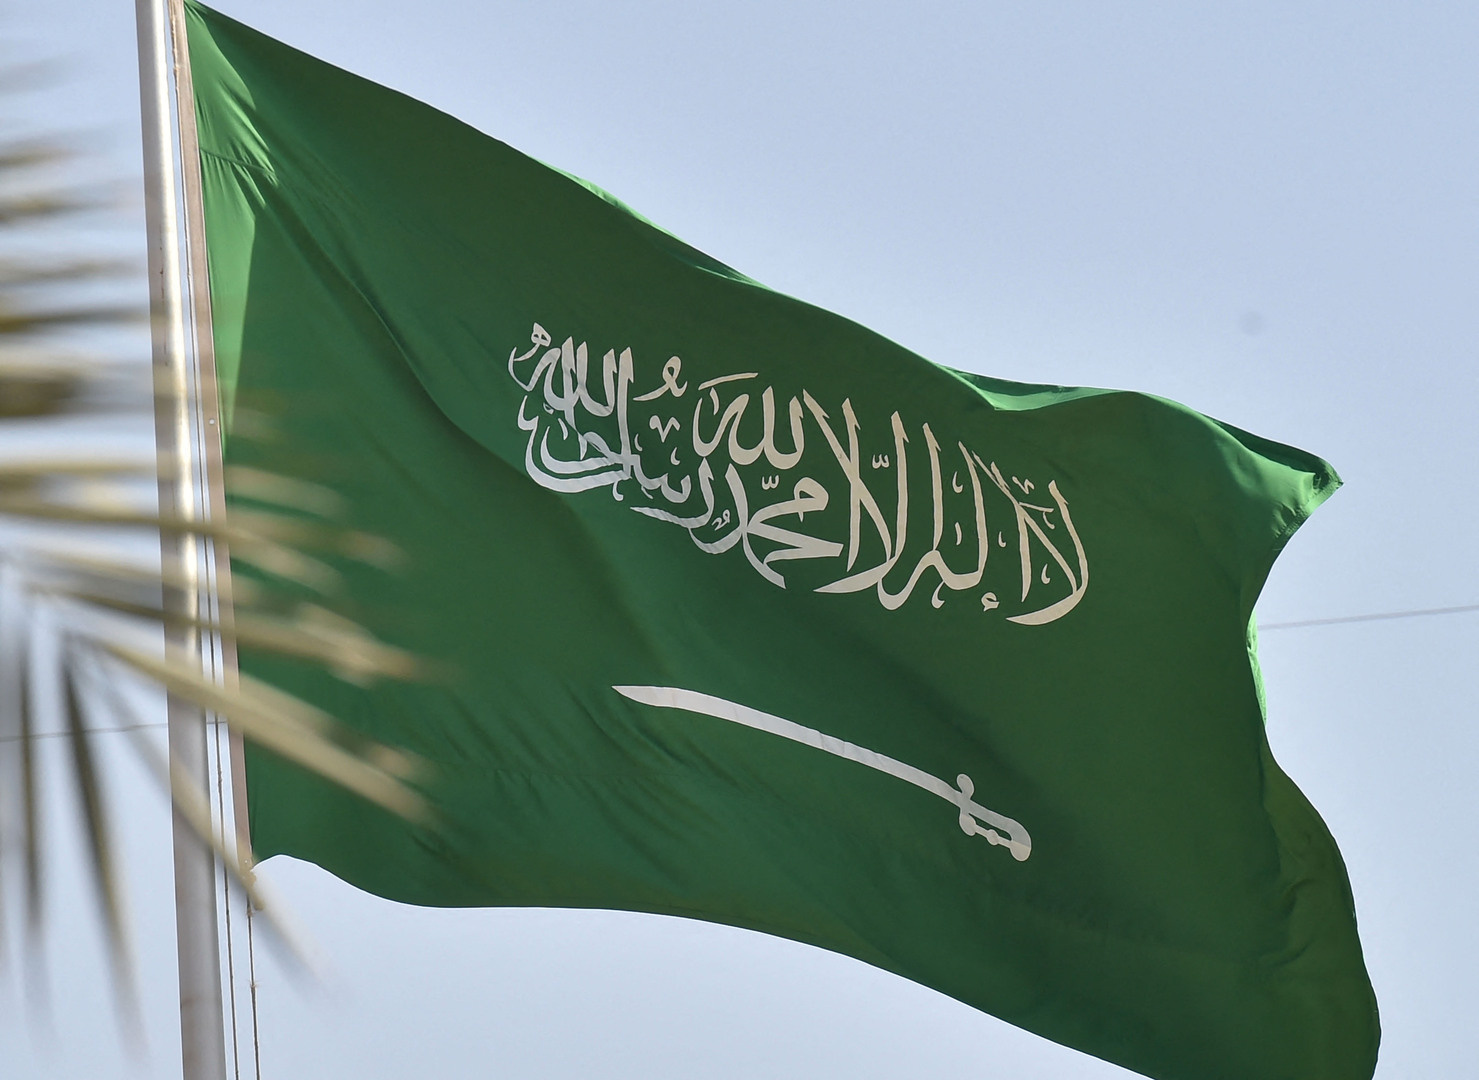 السفارة السعودية في كازاخستان تطلب من مواطنيها التقيد بتعليمات حظر التجوال